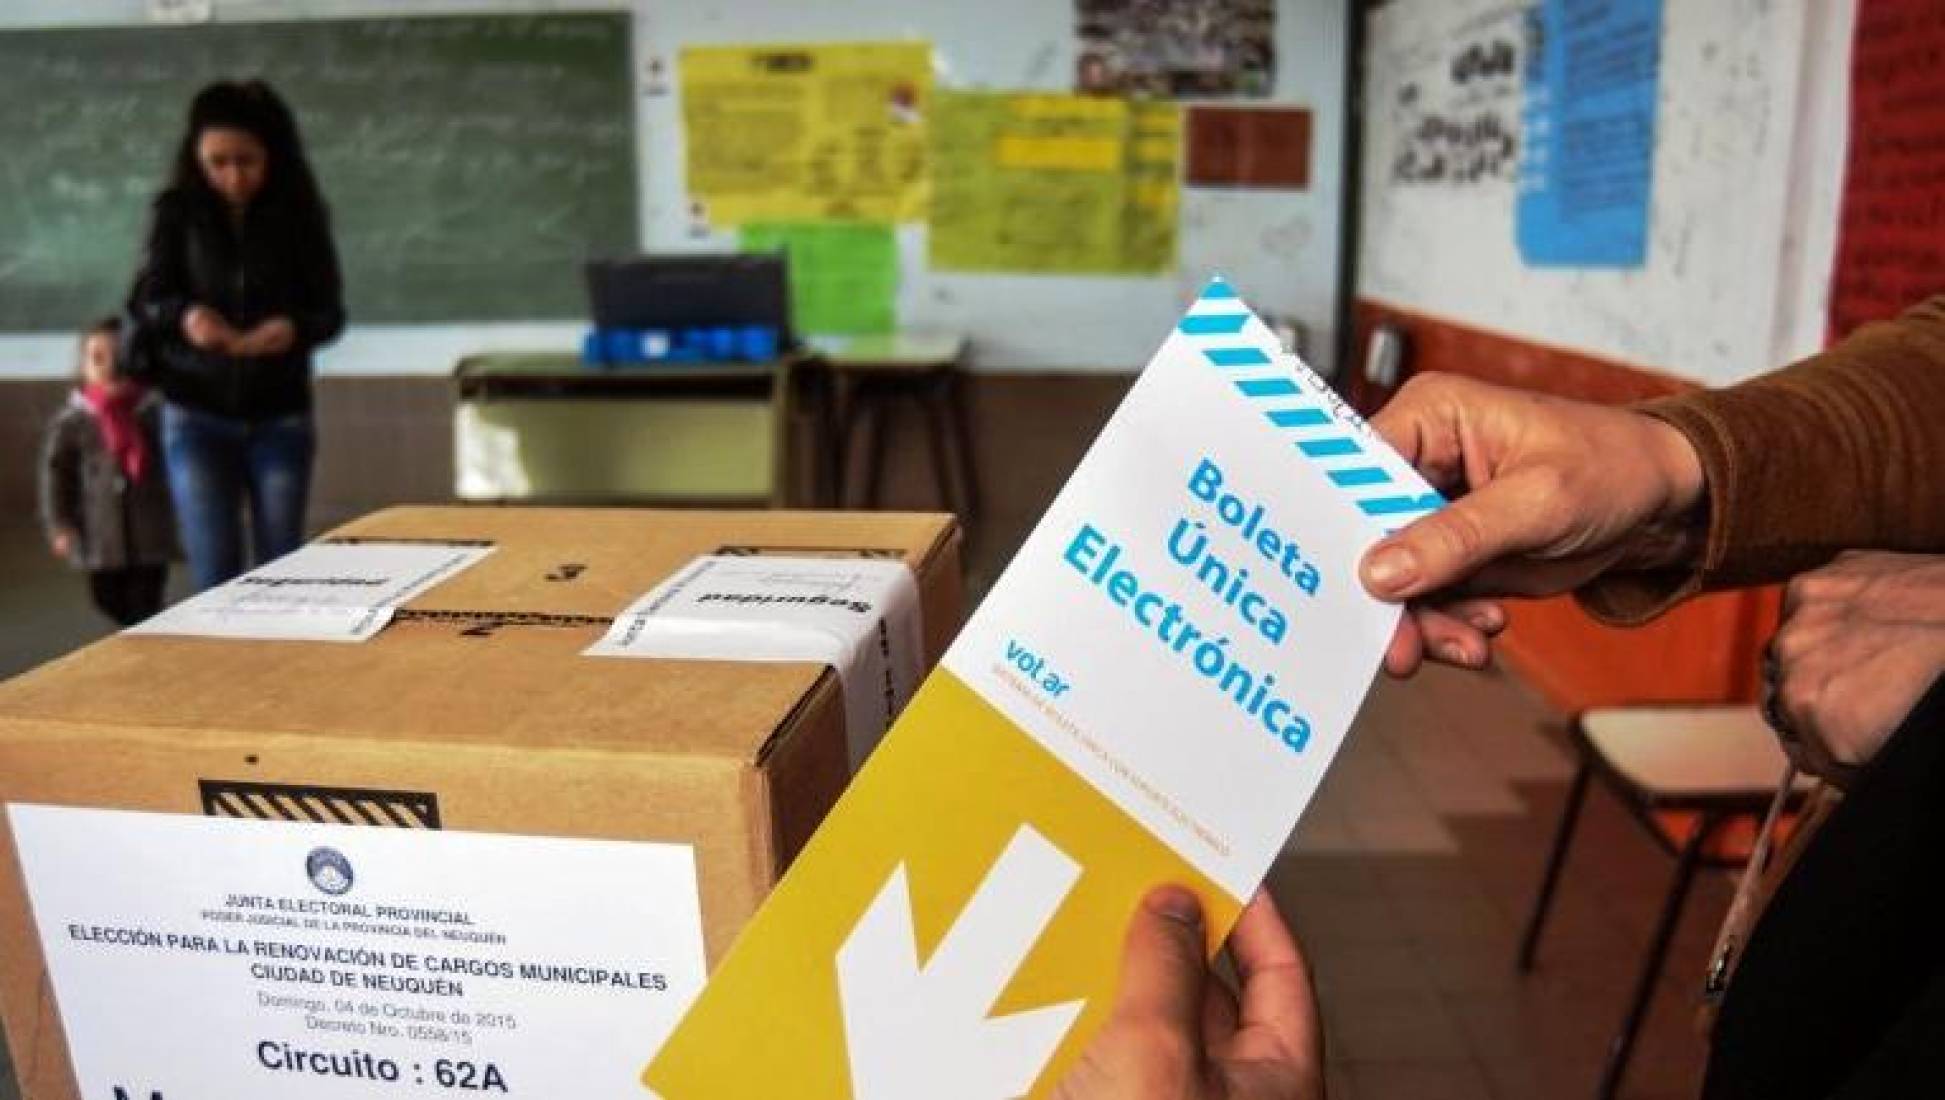 $60.000.000 pesos para la campaña electoral de Salta